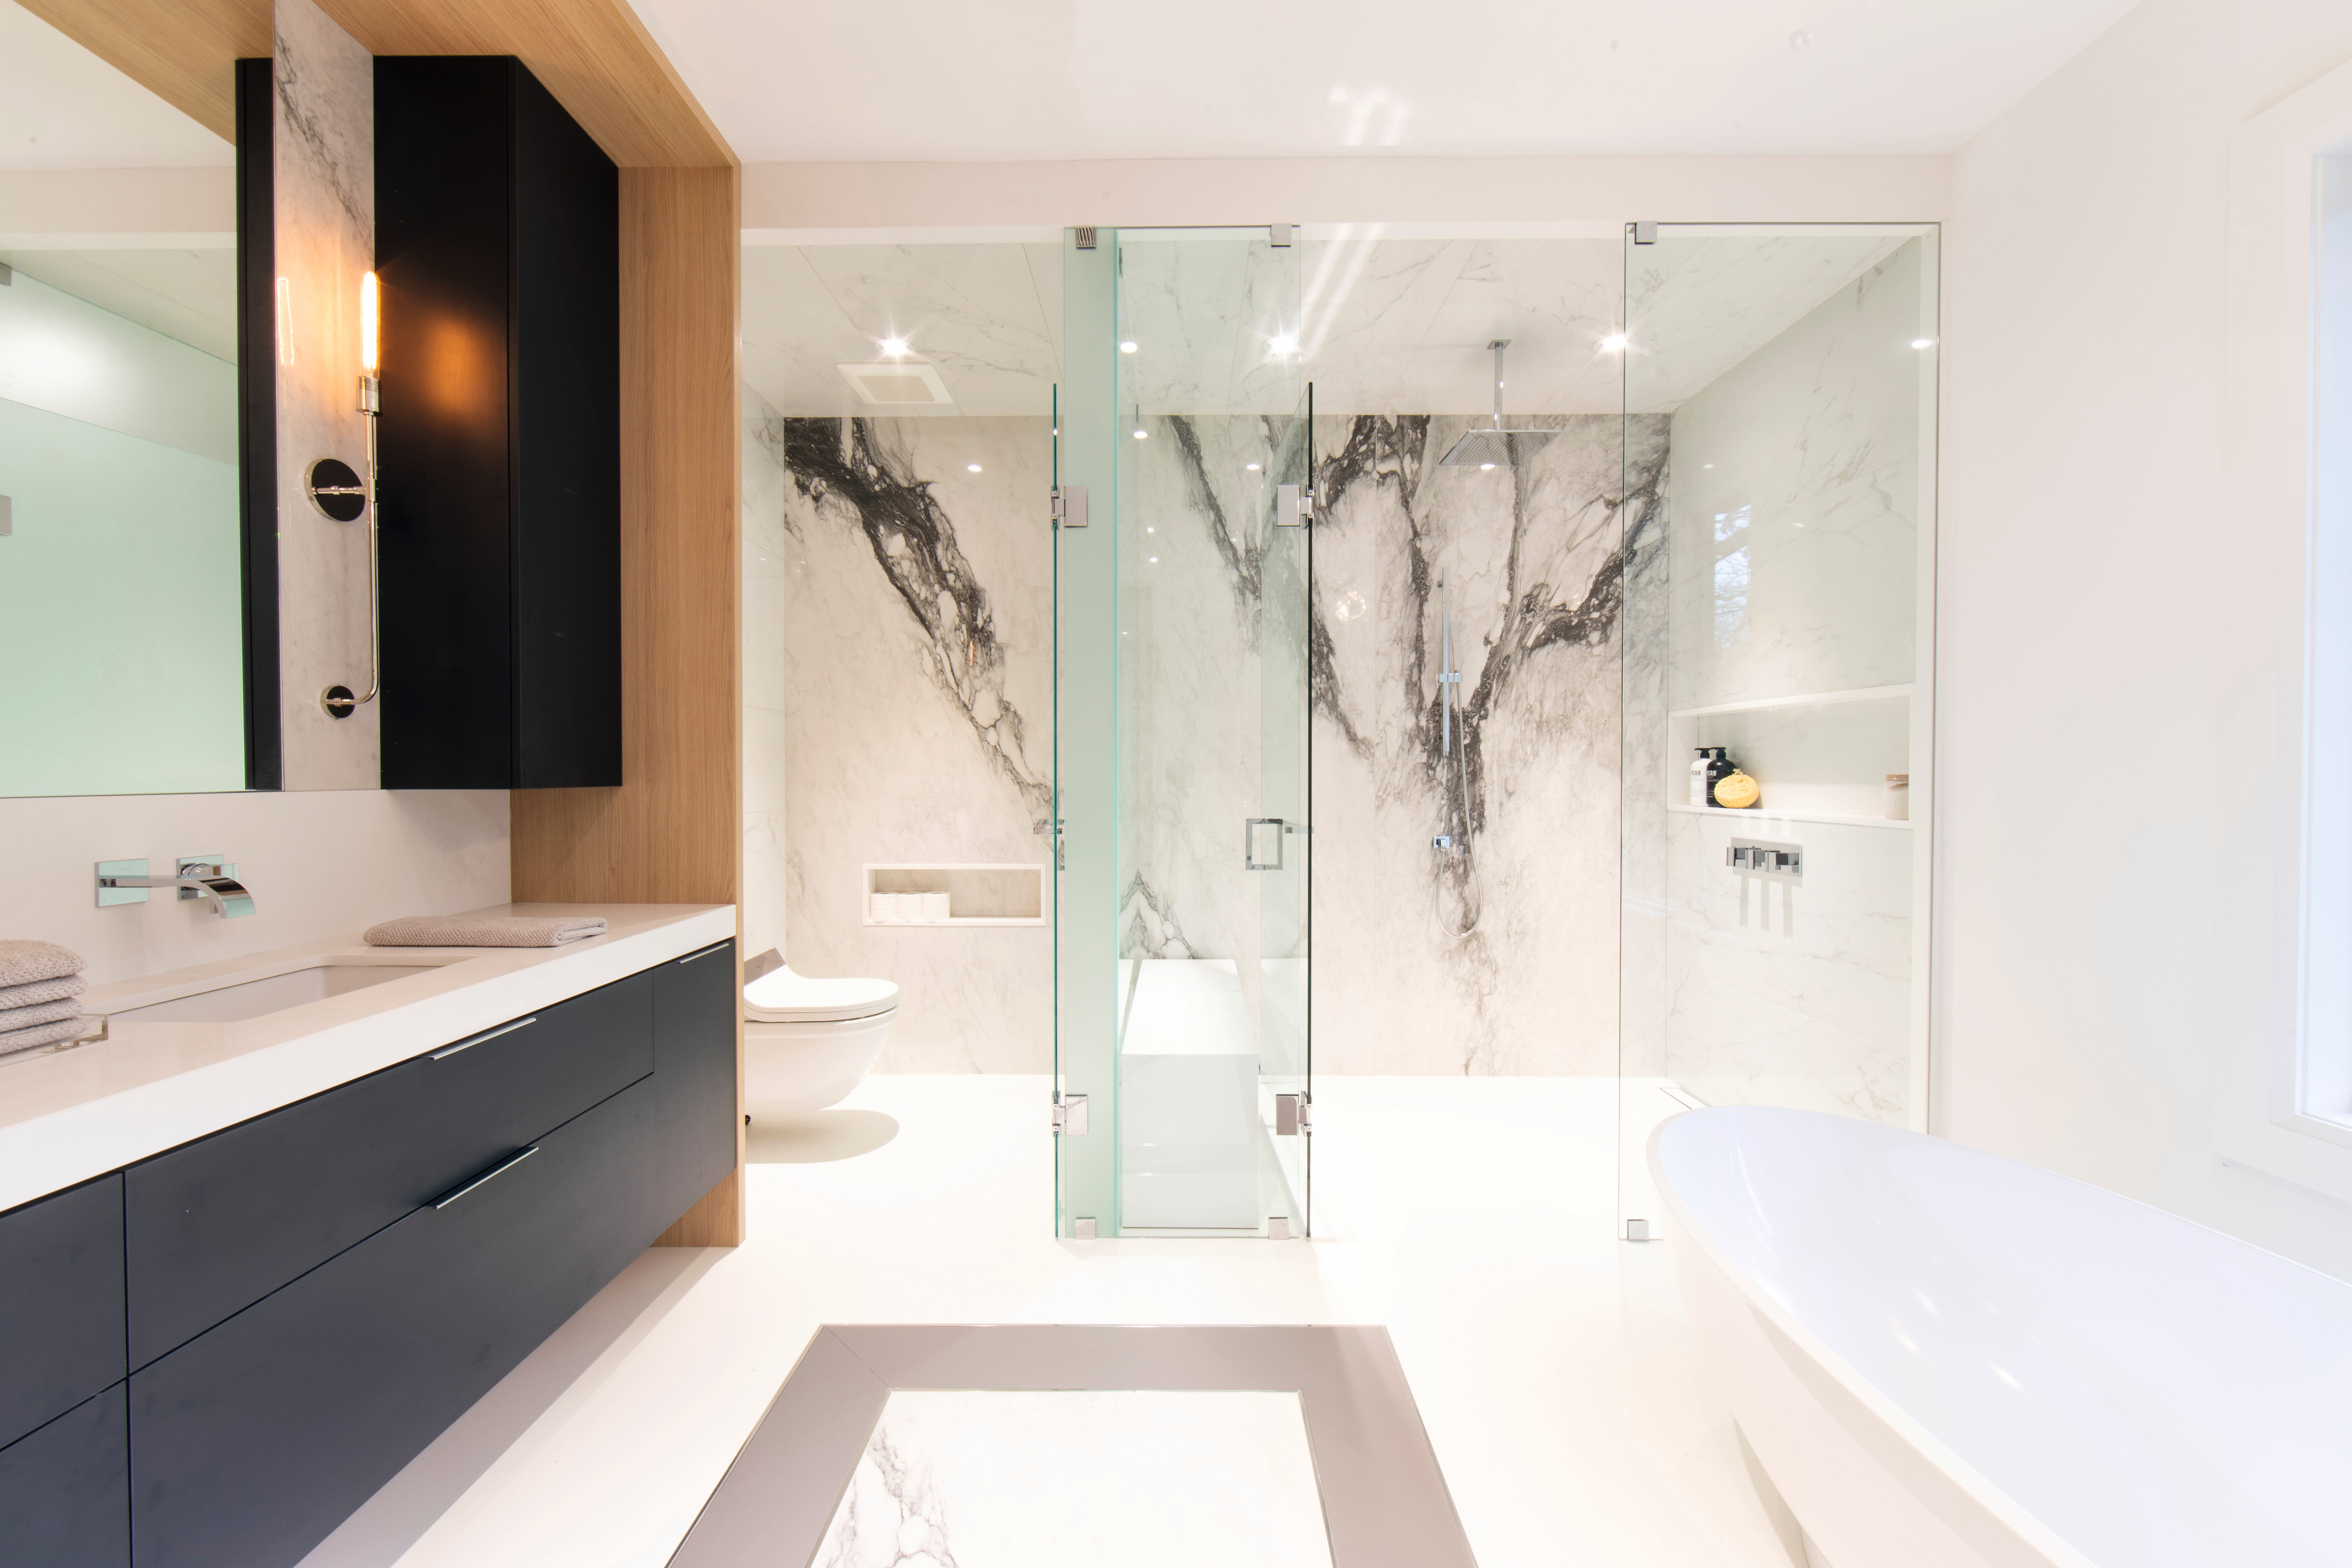 Accenti neri uniti a un effetto legno naturale chiaro e all’eleganza del marmo trasformano il bagno in un'oasi di benessere.